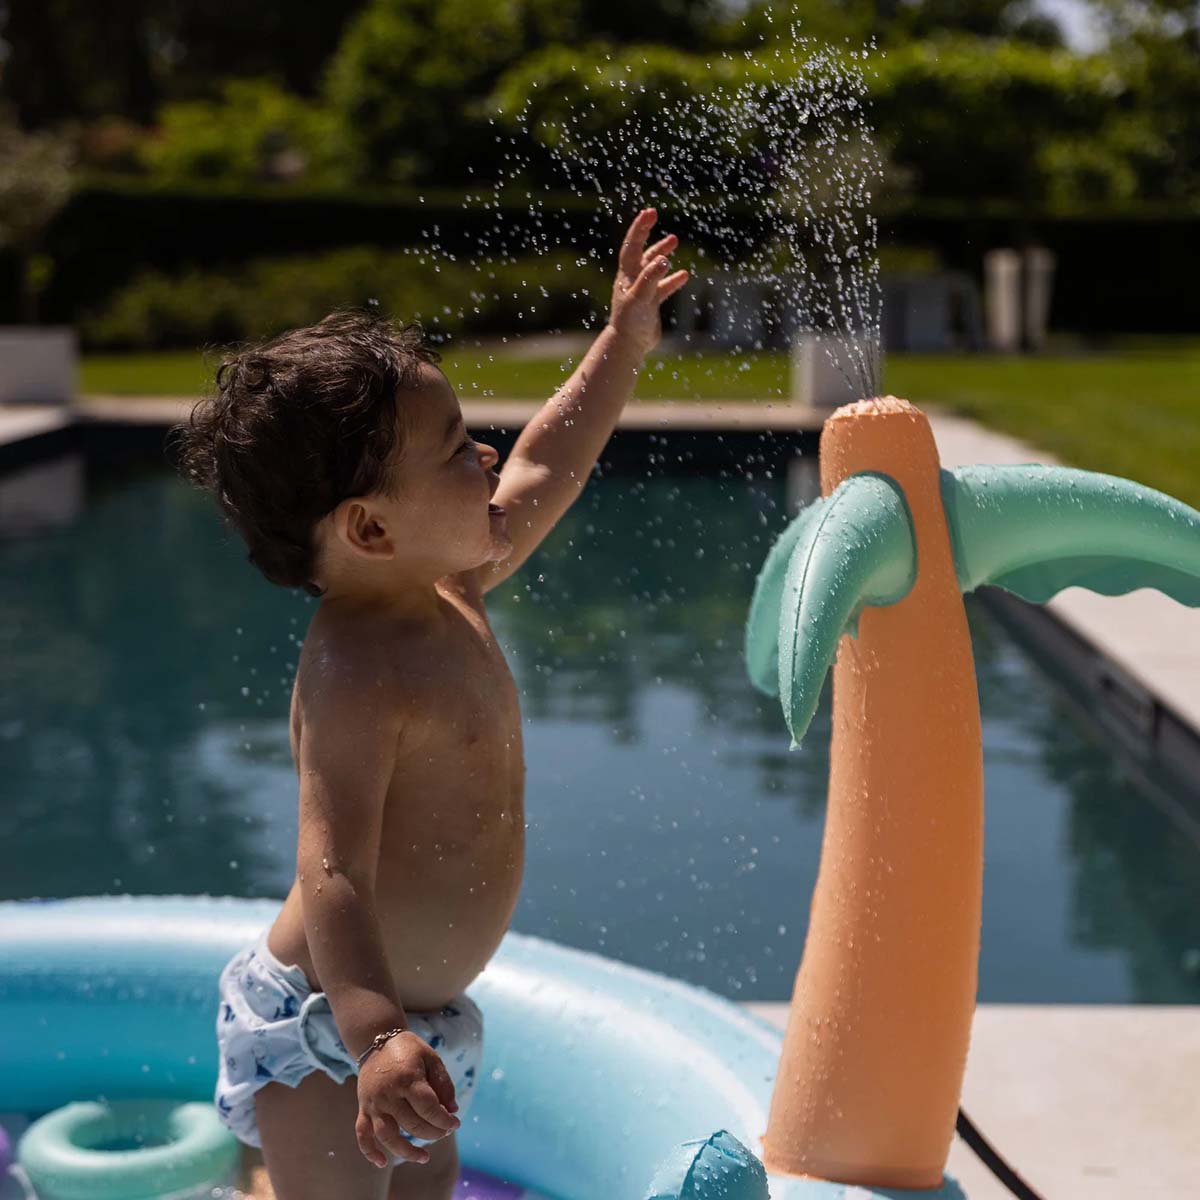 Ieder kind wordt blij van het Swim Essentials speelzwembad adventure hello sunshine! Want wat is er nou leuker dan heerlijk plonzen in het zwembadje op een warme zomerdag? Helemaal niets toch? VanZus.